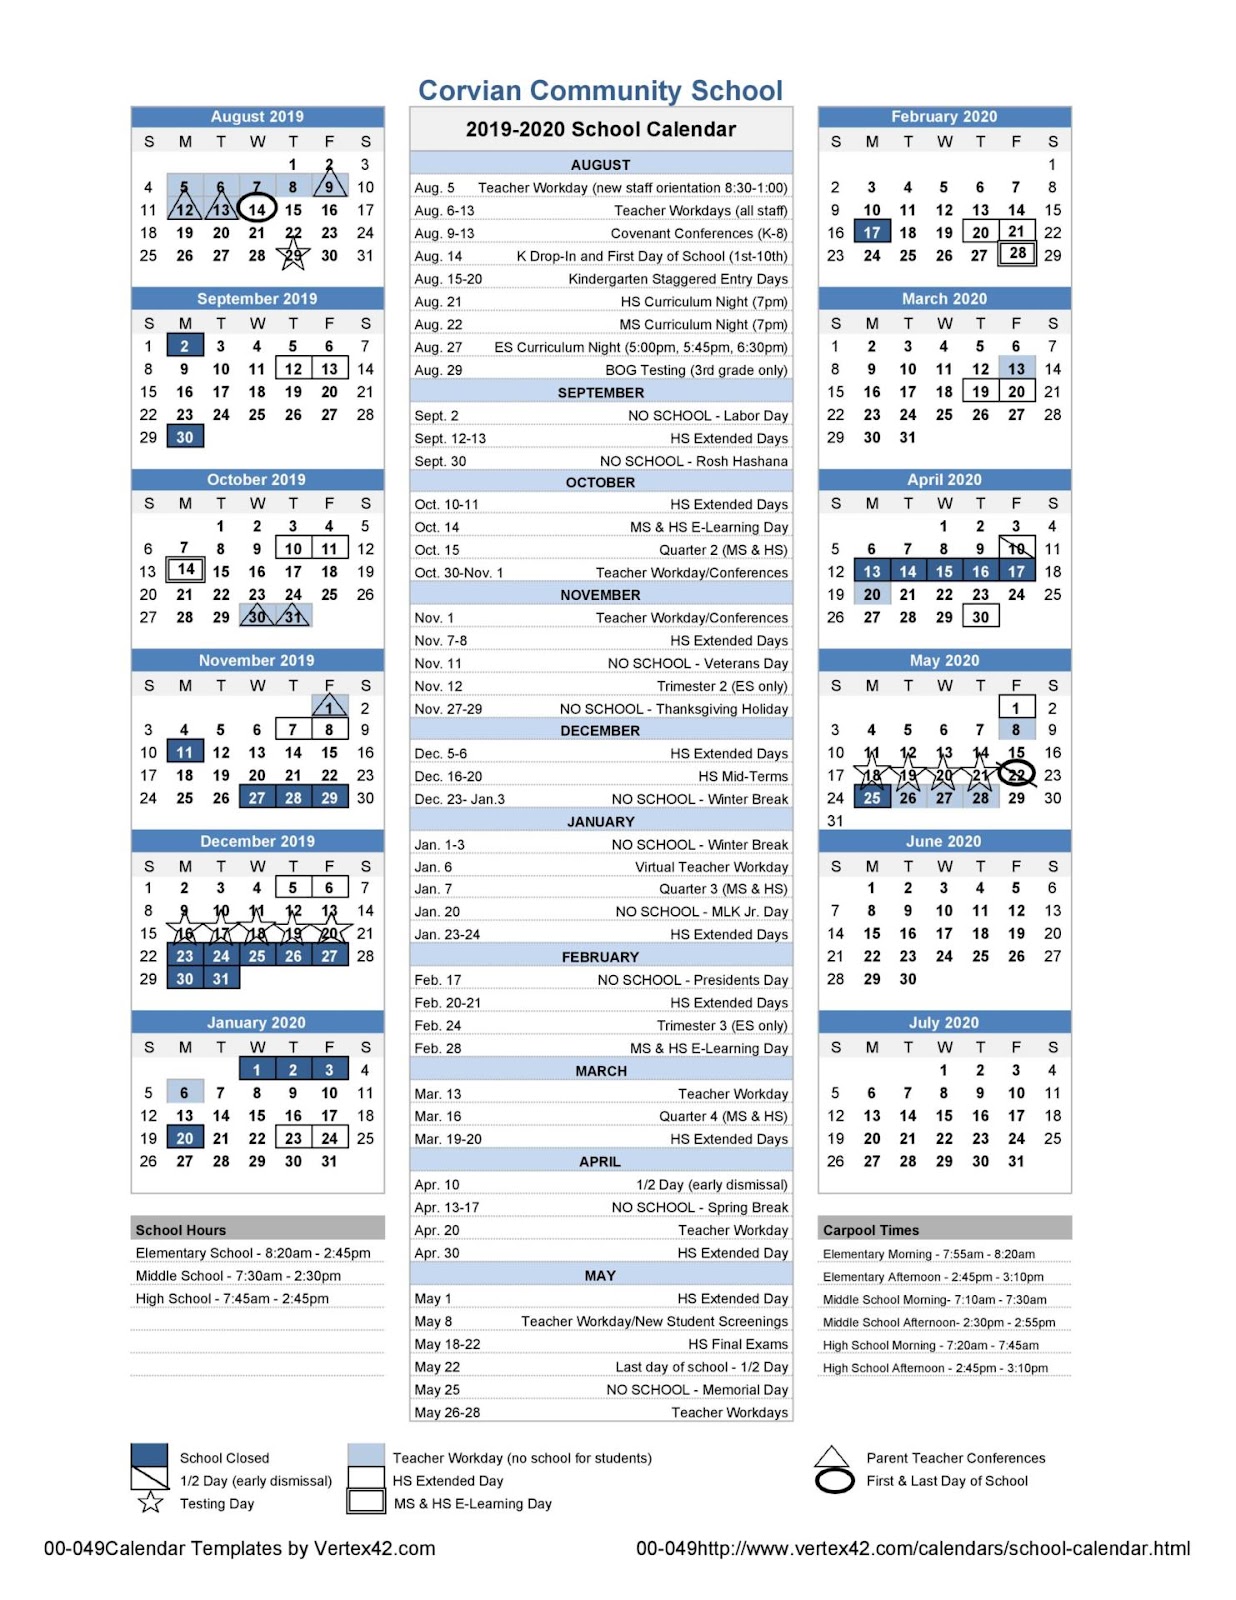 uncc 2021 calendar School Calendar uncc 2021 calendar